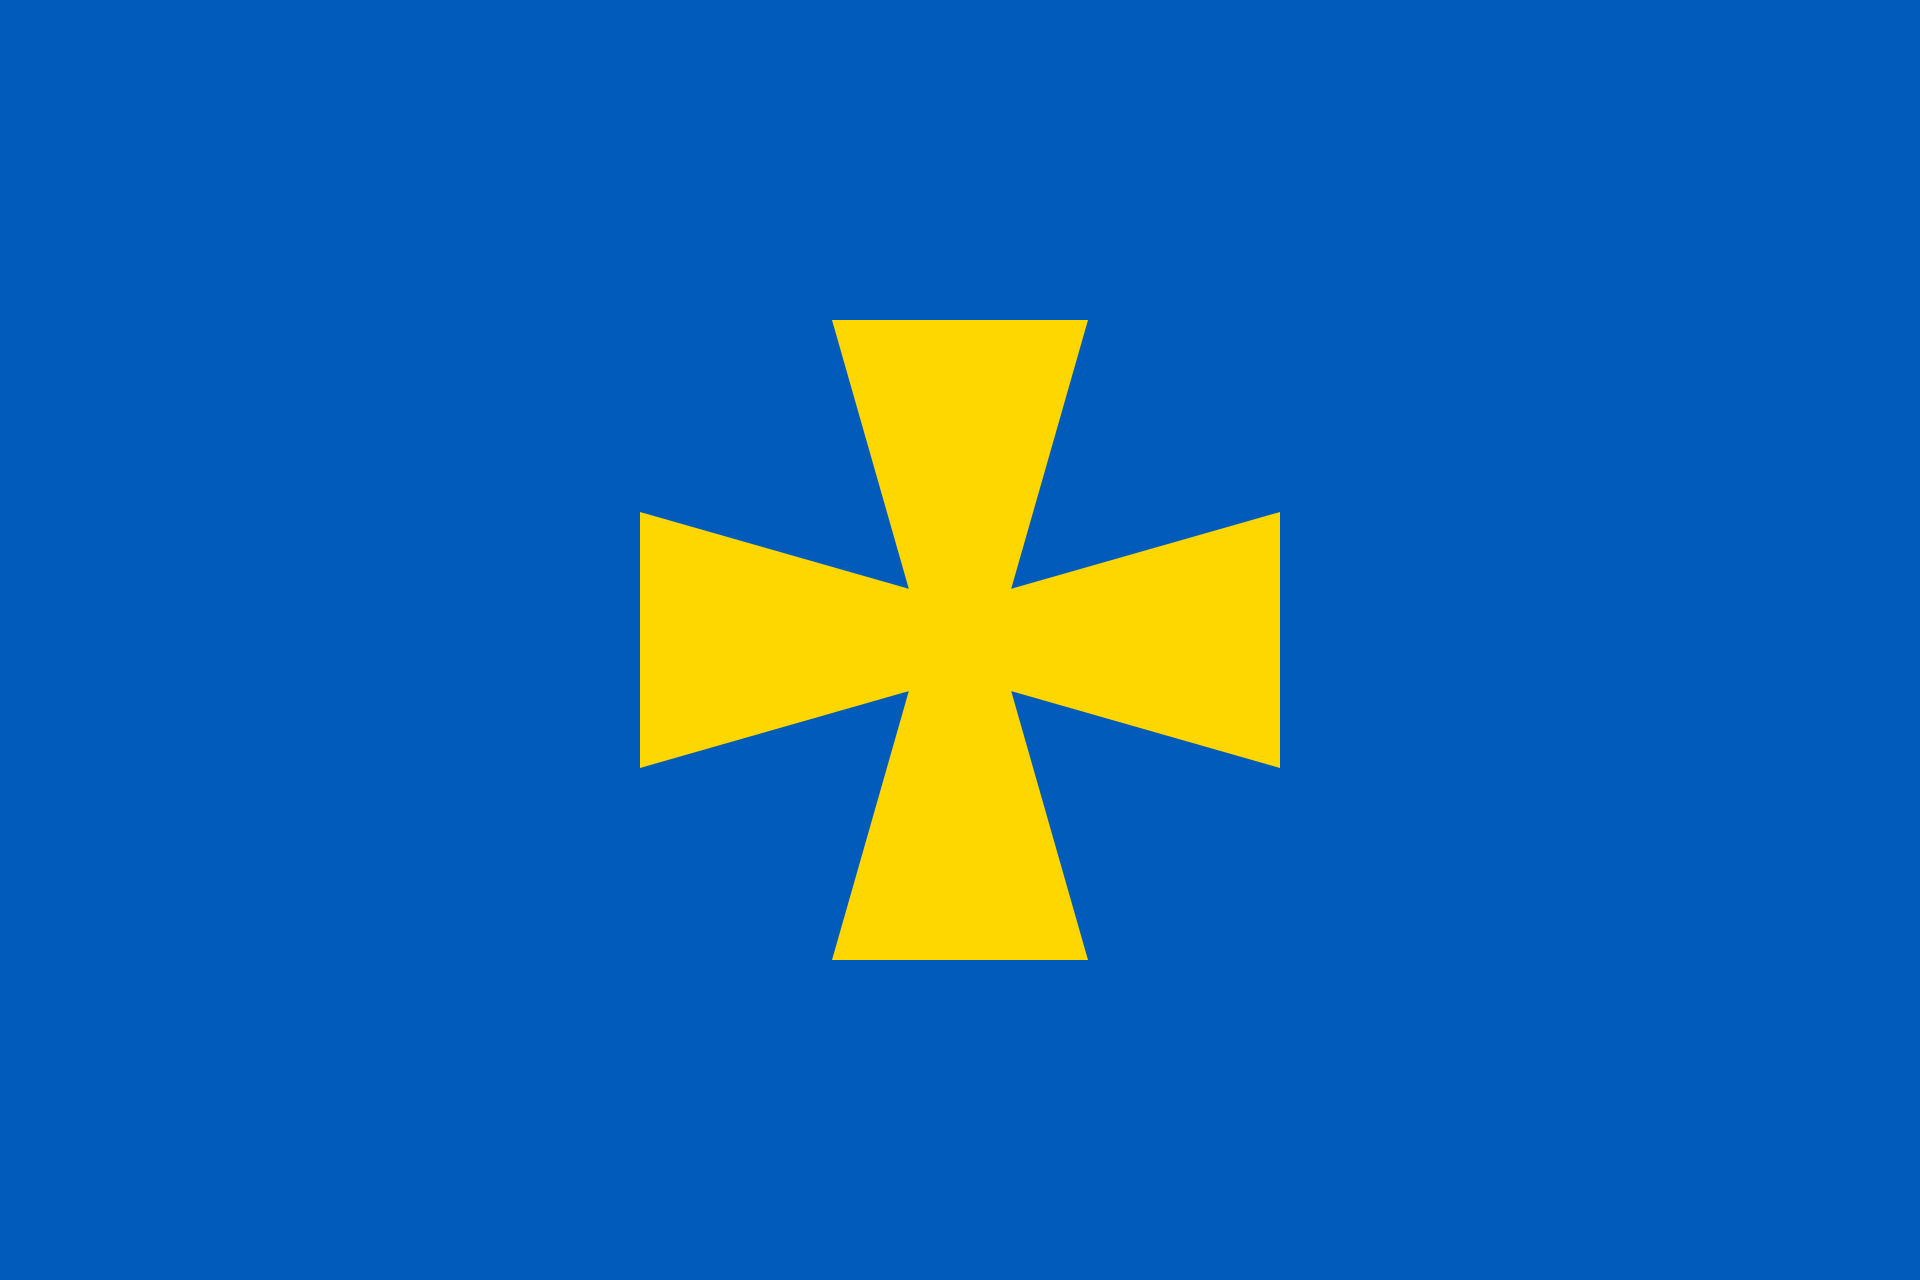 Флаг Полтавской области